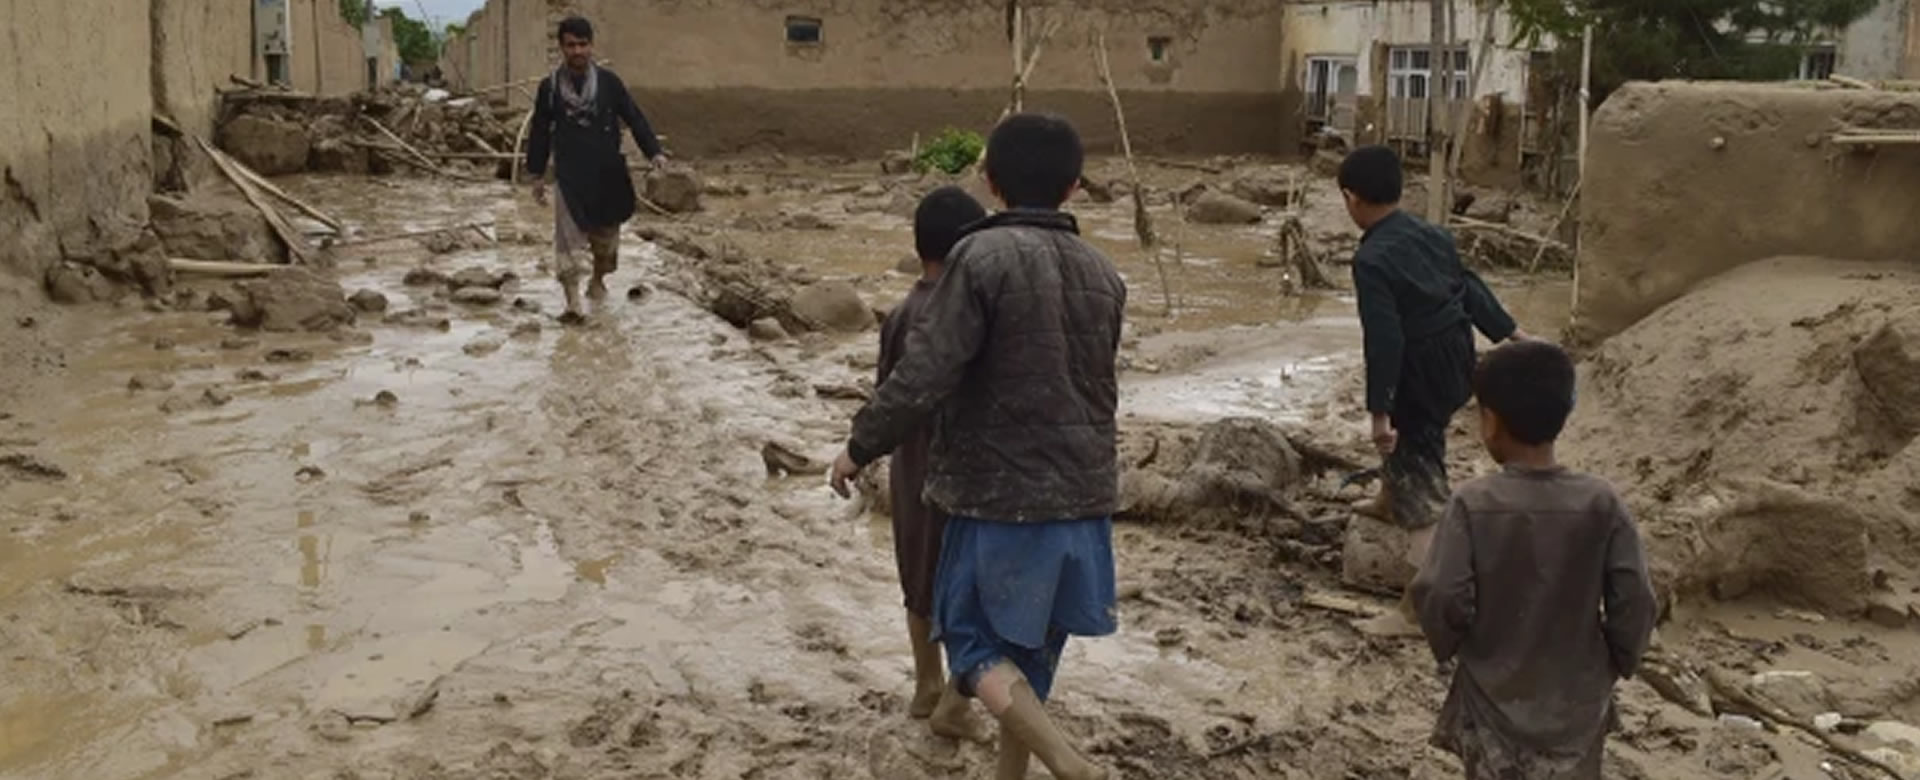 lluvias inundaciones muertas afganistán